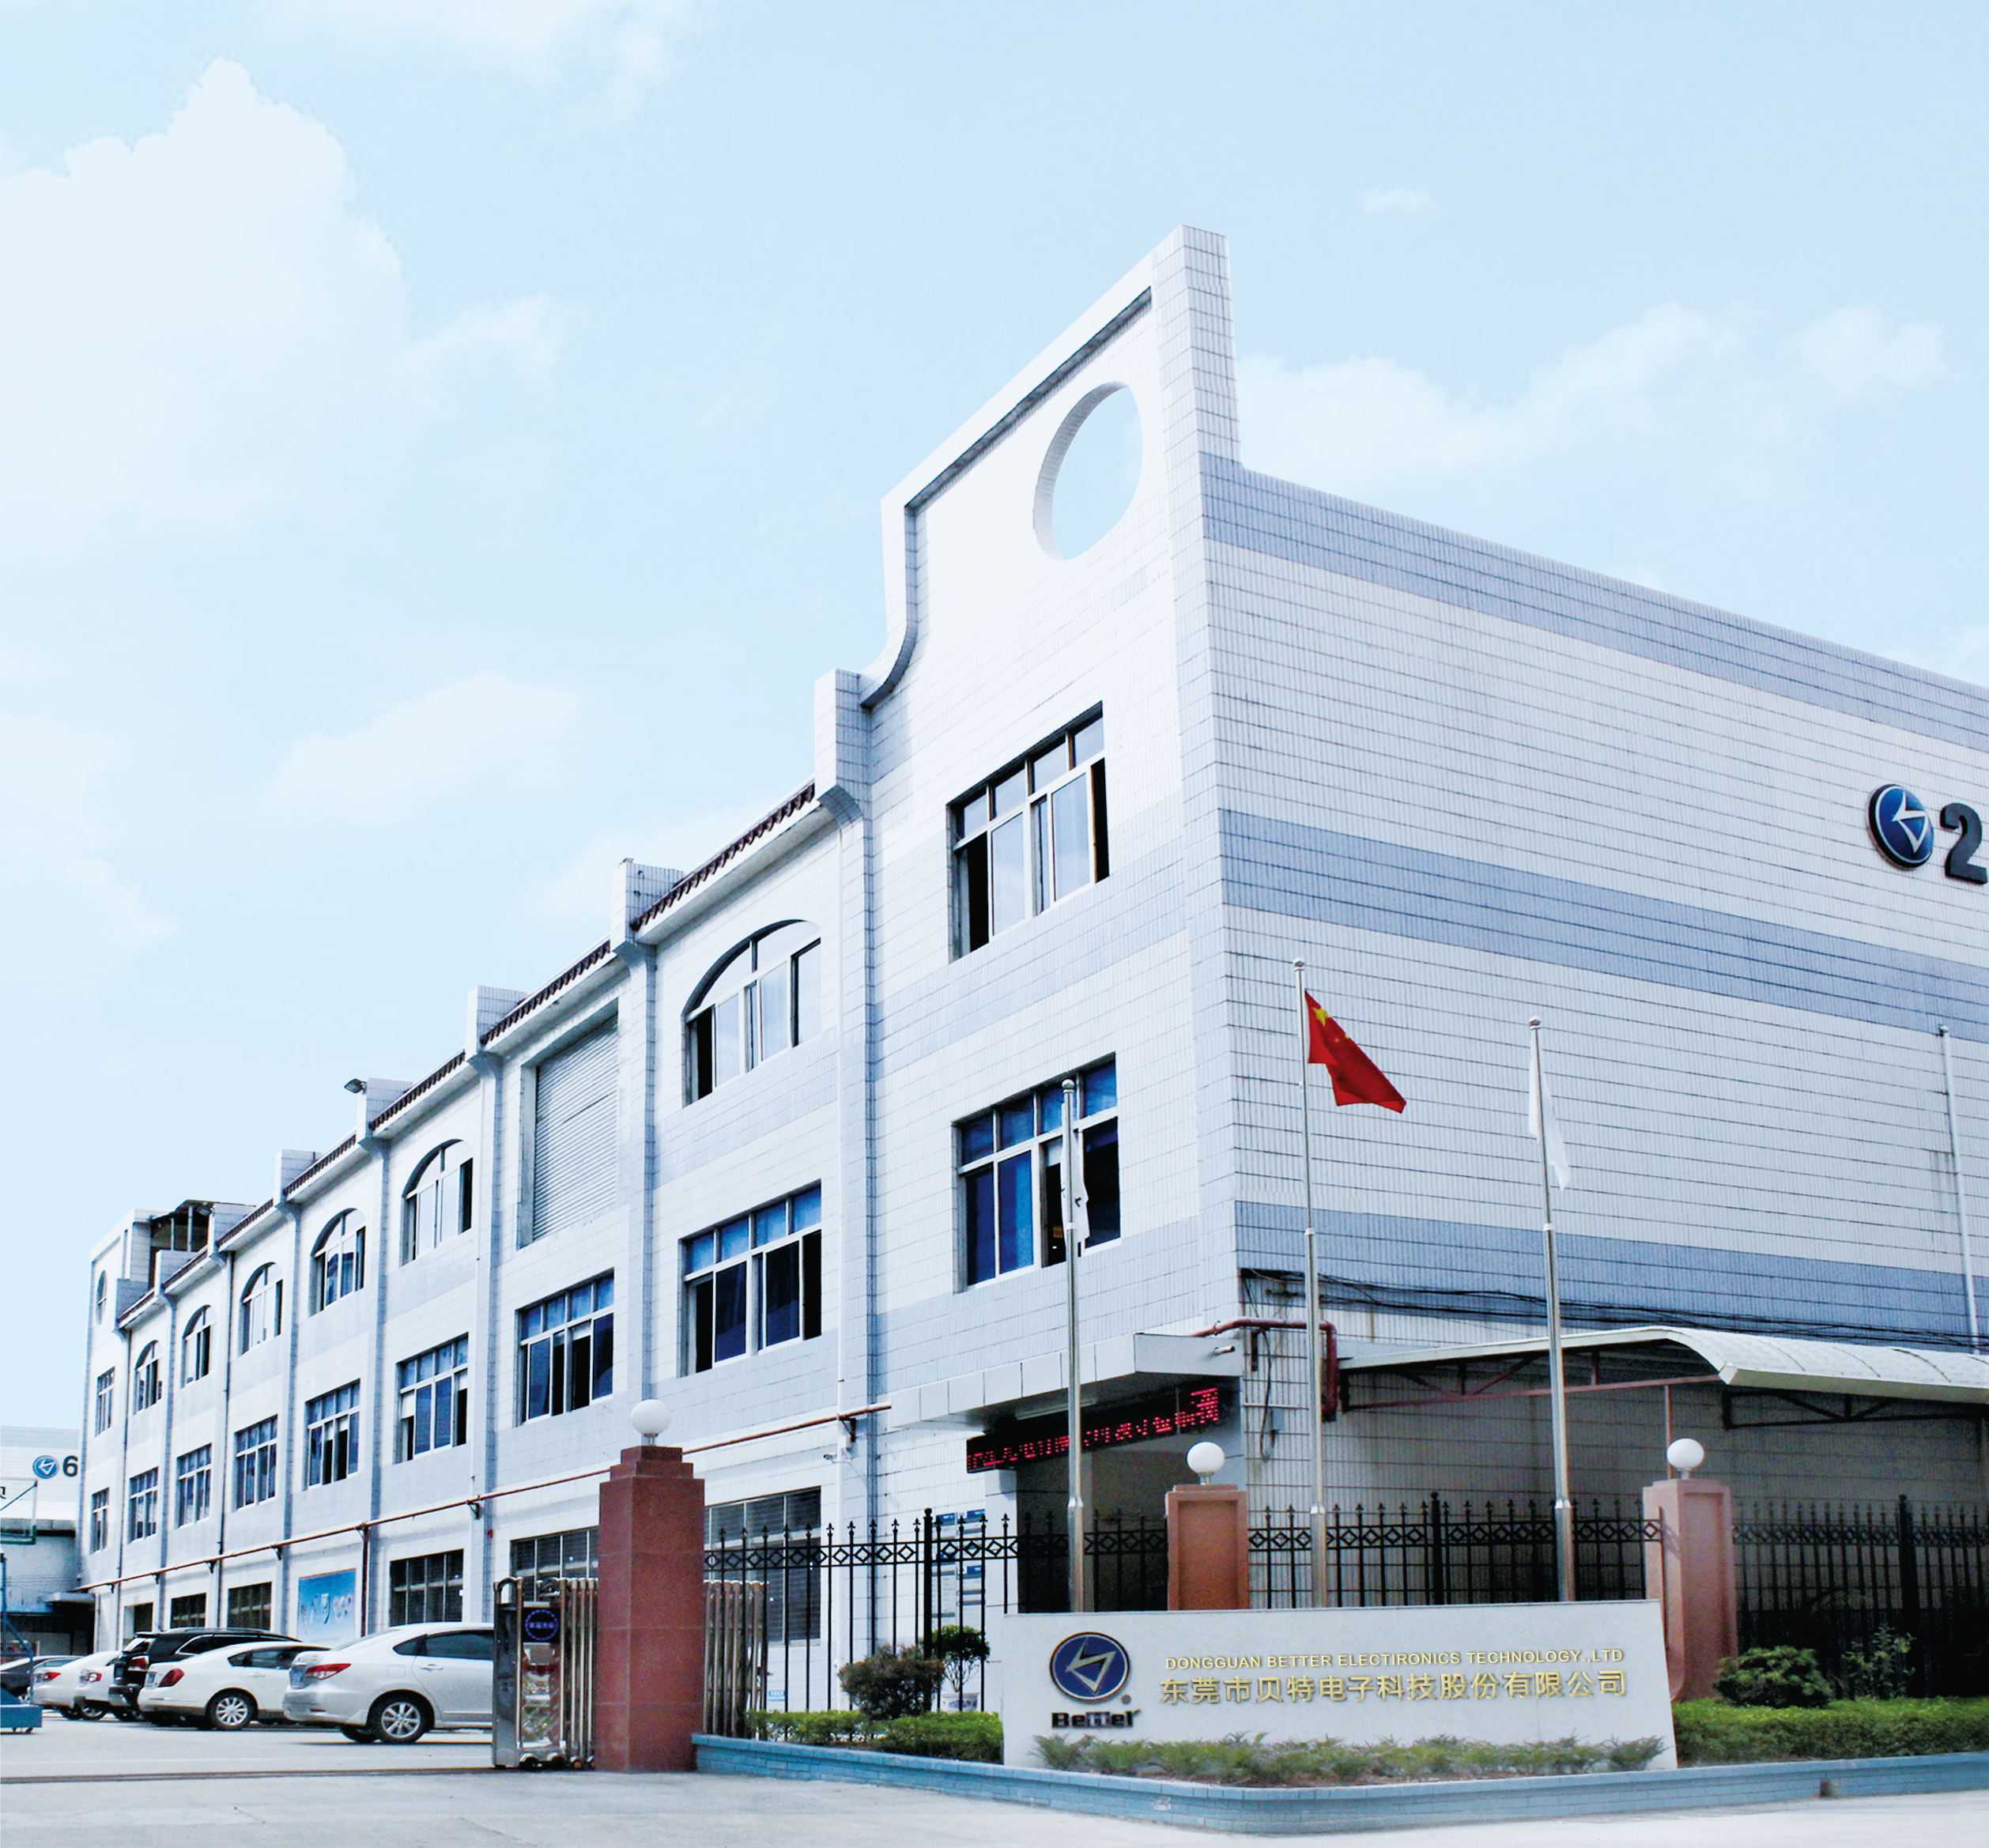 Dongguan Better Electronics Co., Ltd.  First plant